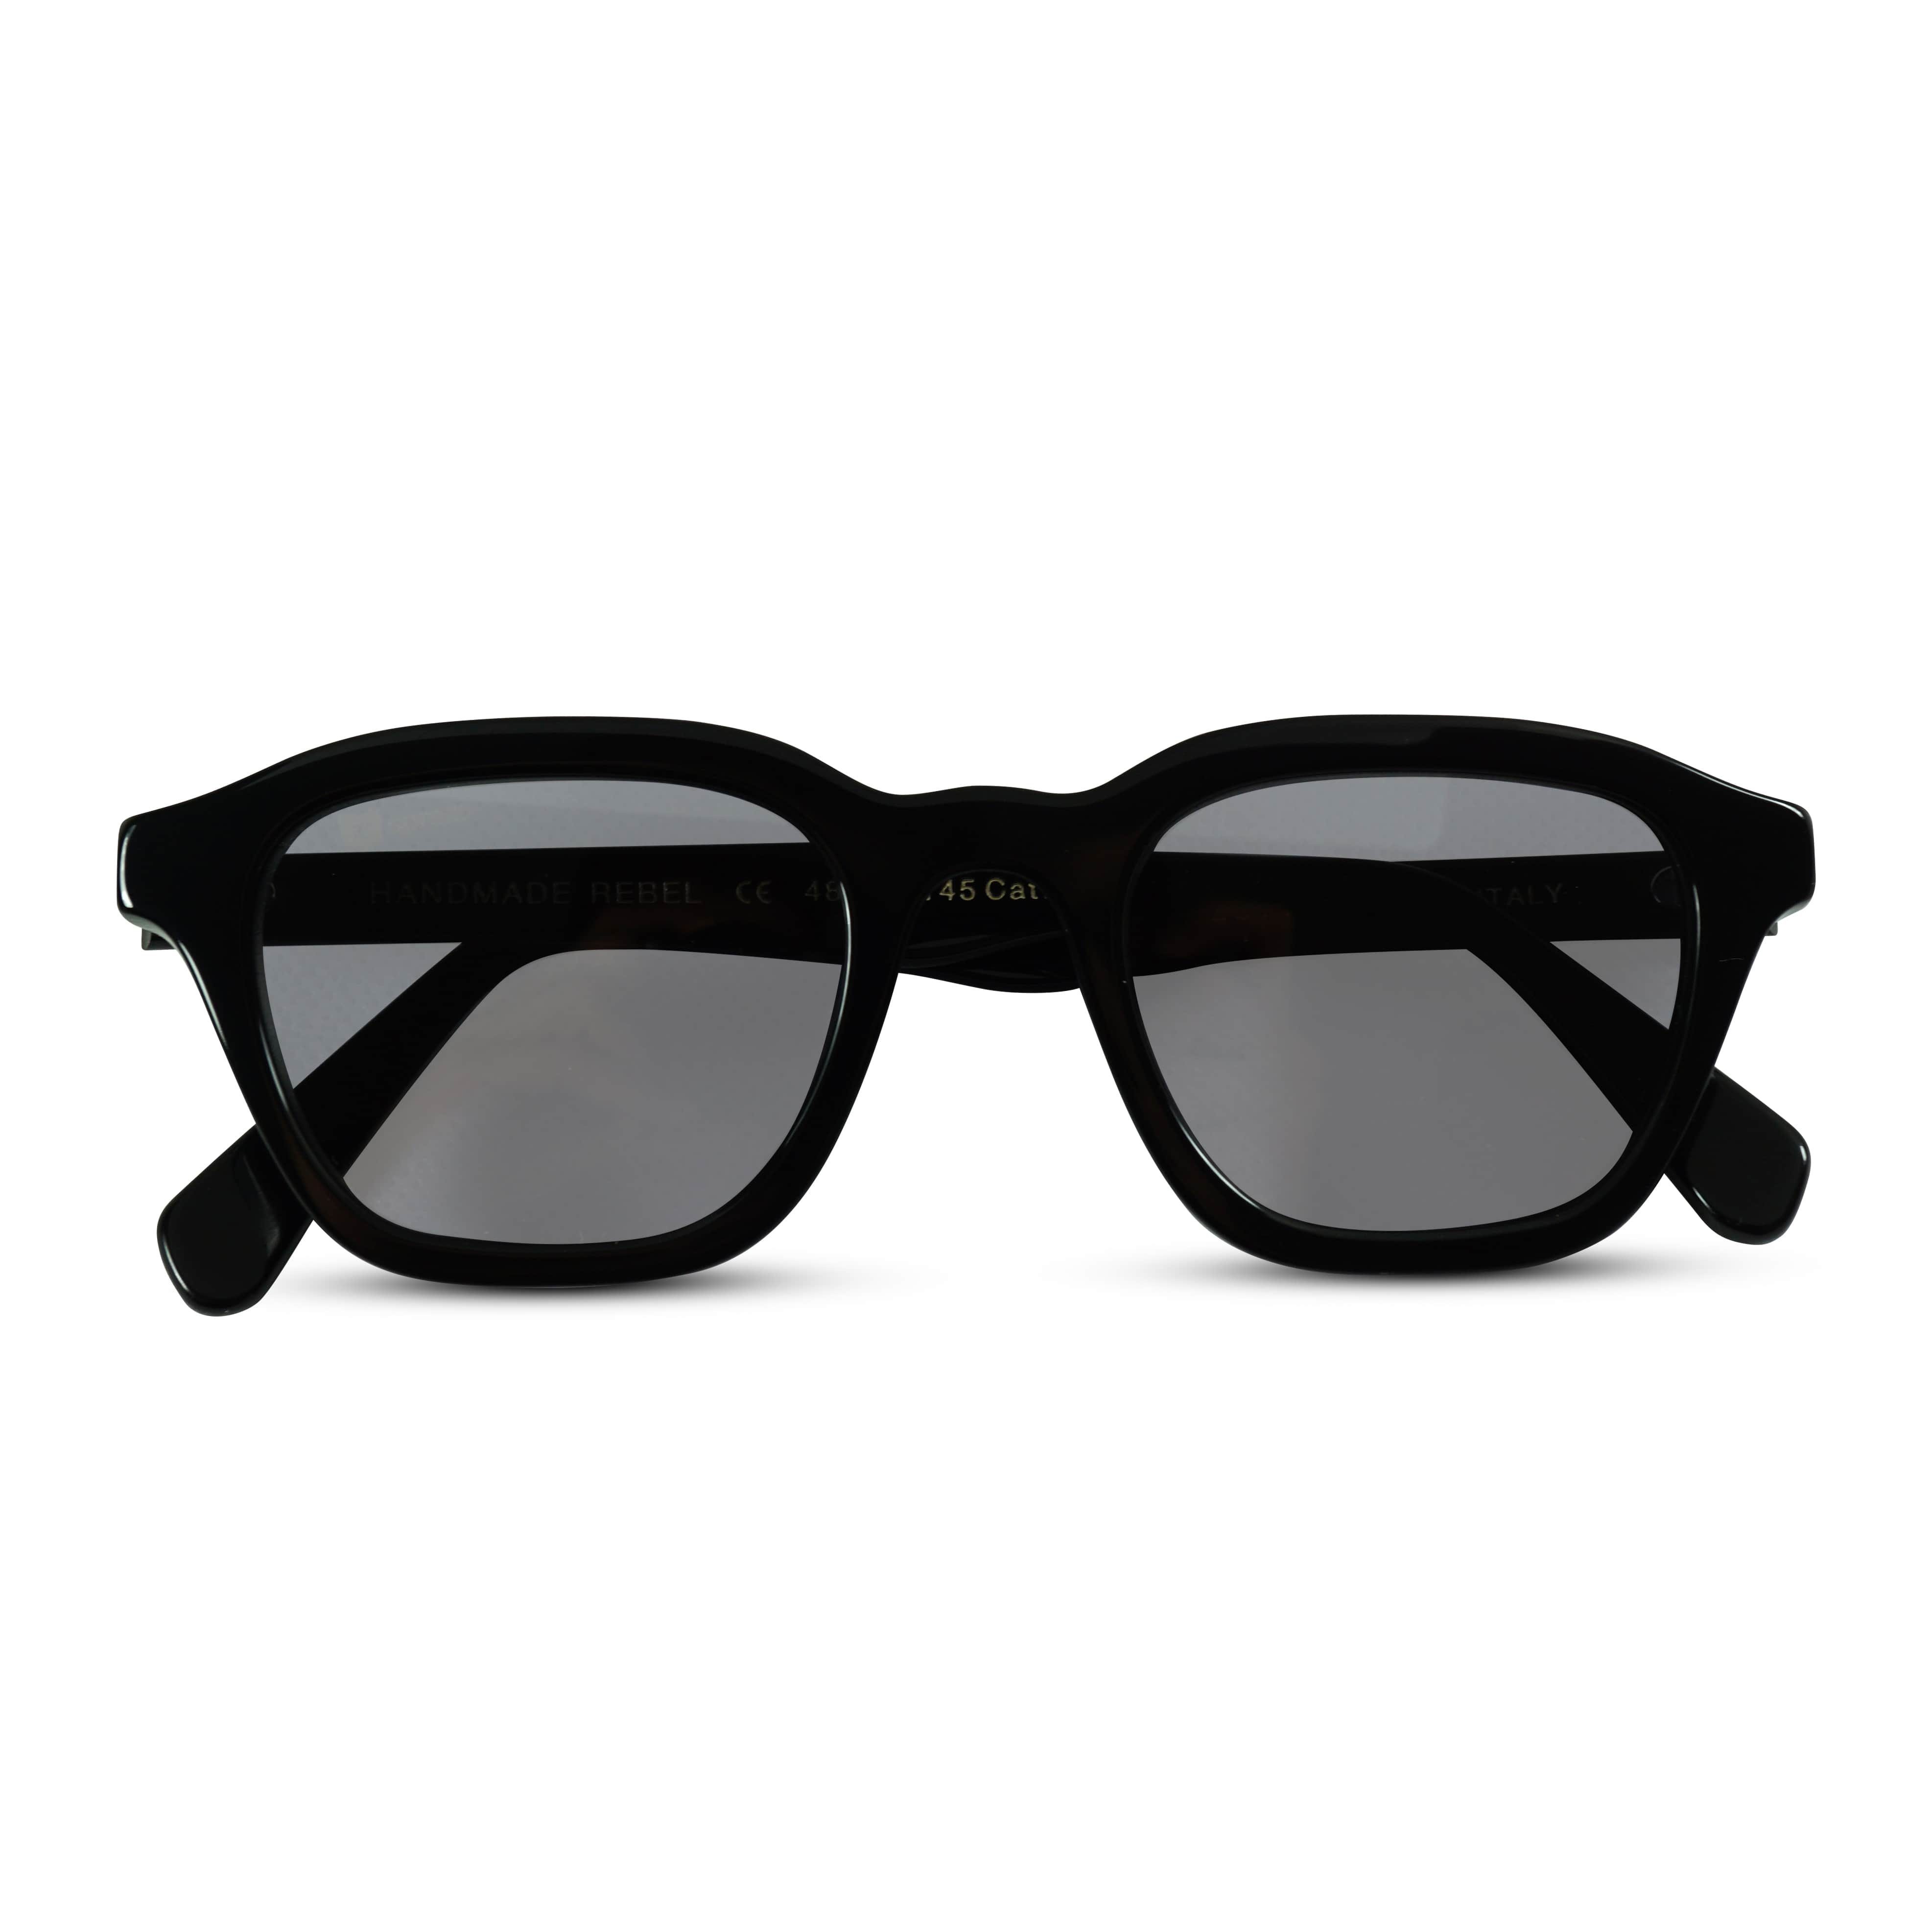 Sprezzi Fashion Sonnenbrille Moderne Designer Sonnenbrille Unisex Zeitloses Design UV Schutz (inkl. Brillenetui, Reisetasche und Putztuch geliefert, inkl. Brillenetui, Reisetasche und Putztuch geliefert) 100% Made in Italy, CE Zertifizierung, Hochwertiges Acetat